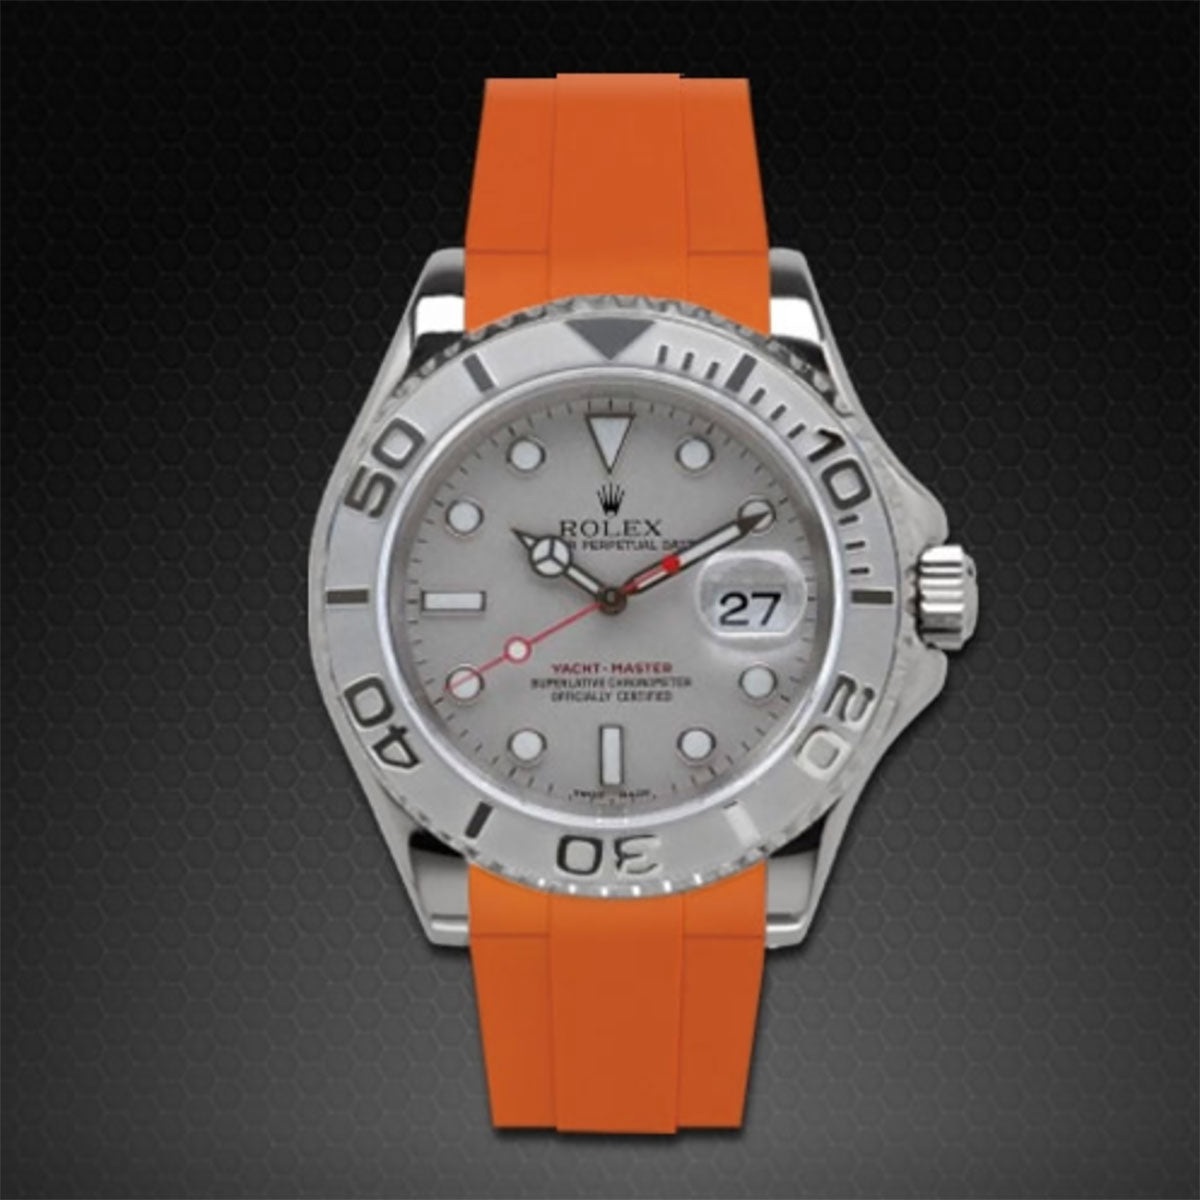 Rolex - Rubber B - Bracelet caoutchouc pour Yachtmaster 40mm - Série boucle ardillon - watch band leather strap - ABP Concept -